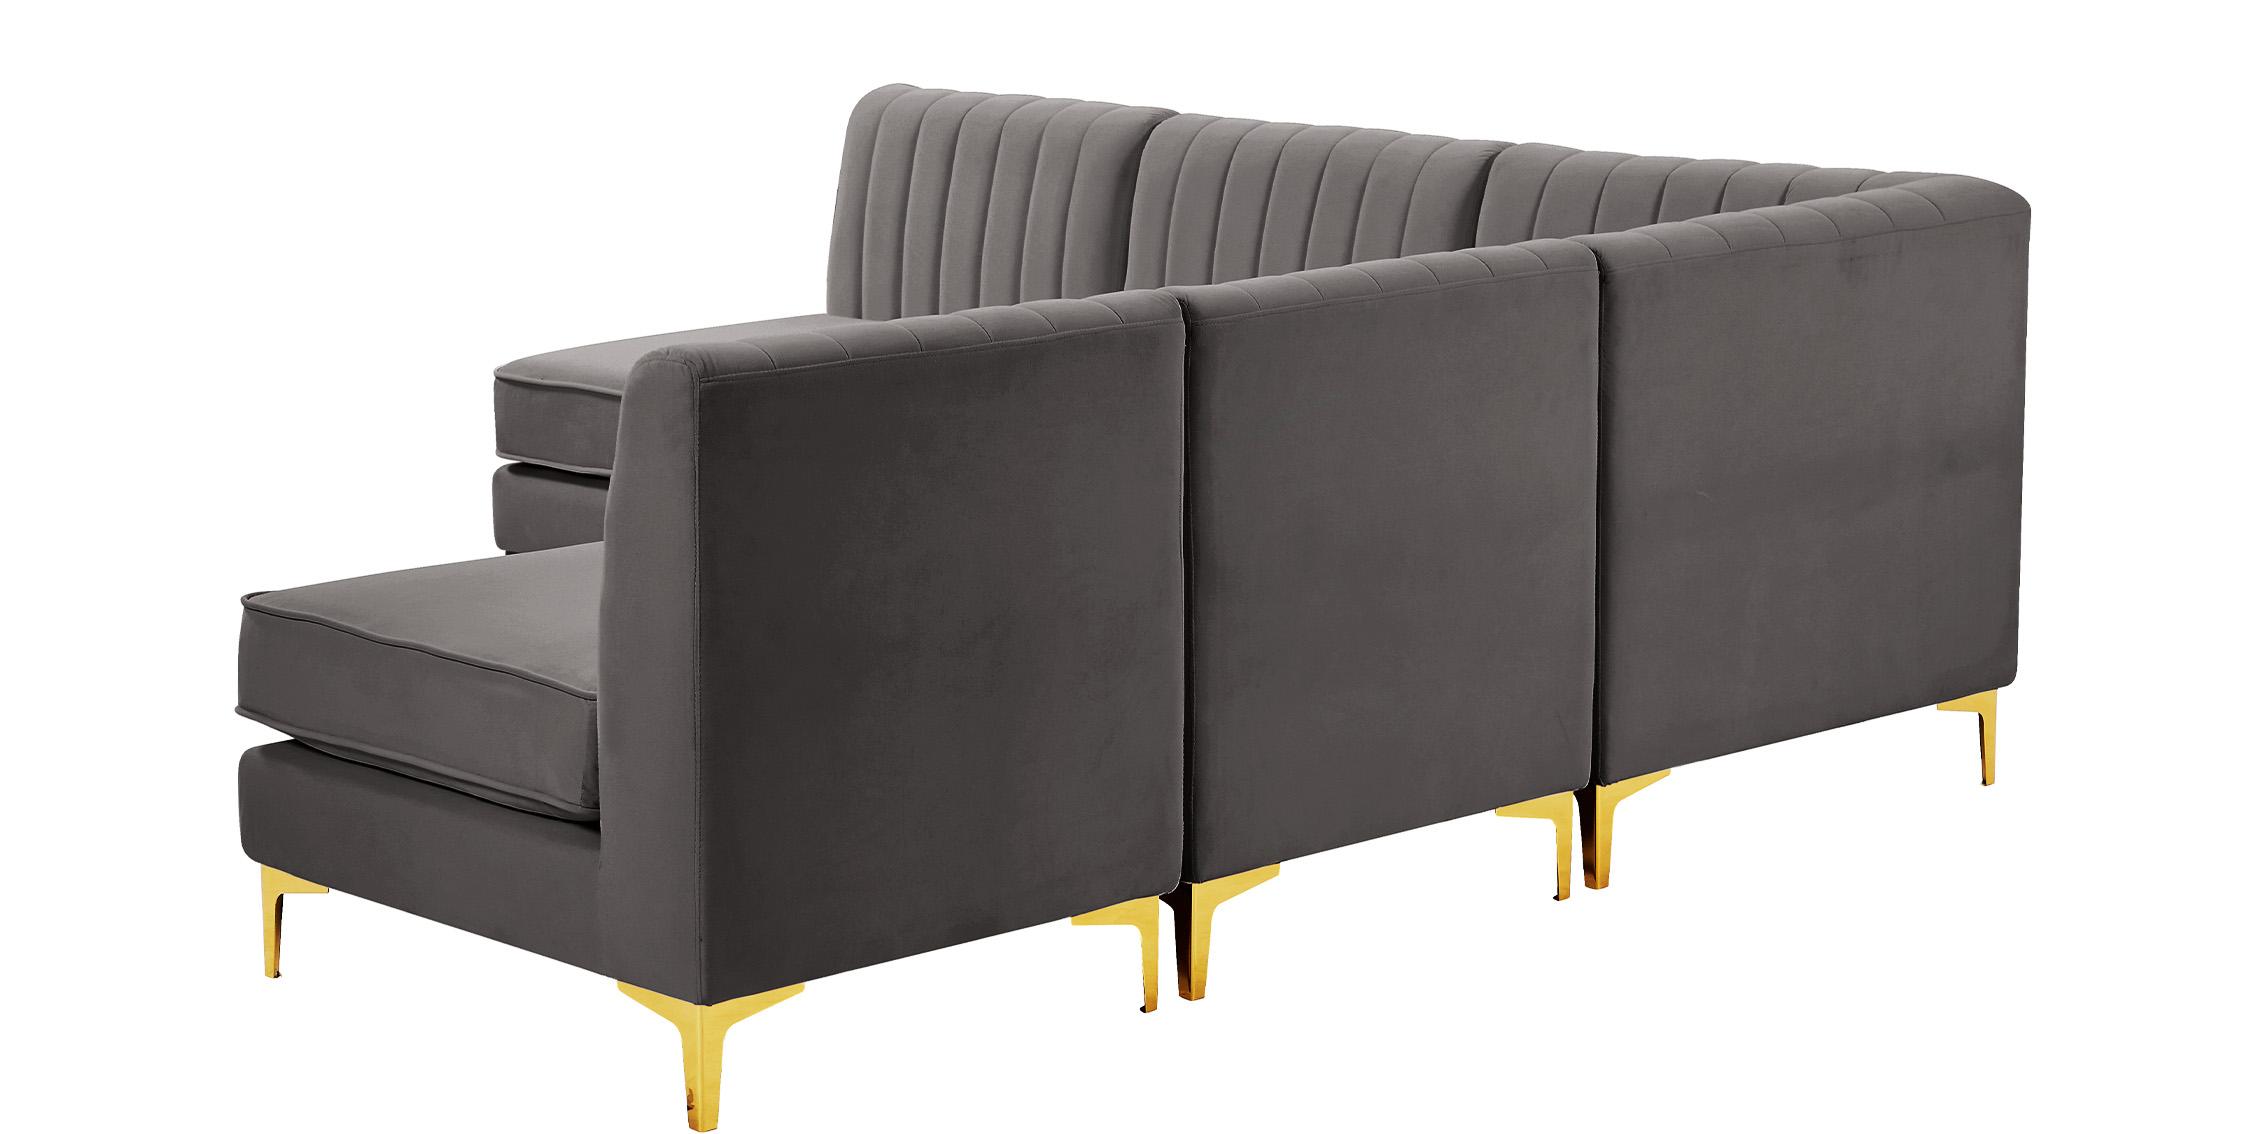 

    
604Grey-Sec5A Meridian Furniture Modular Sectional Sofa
